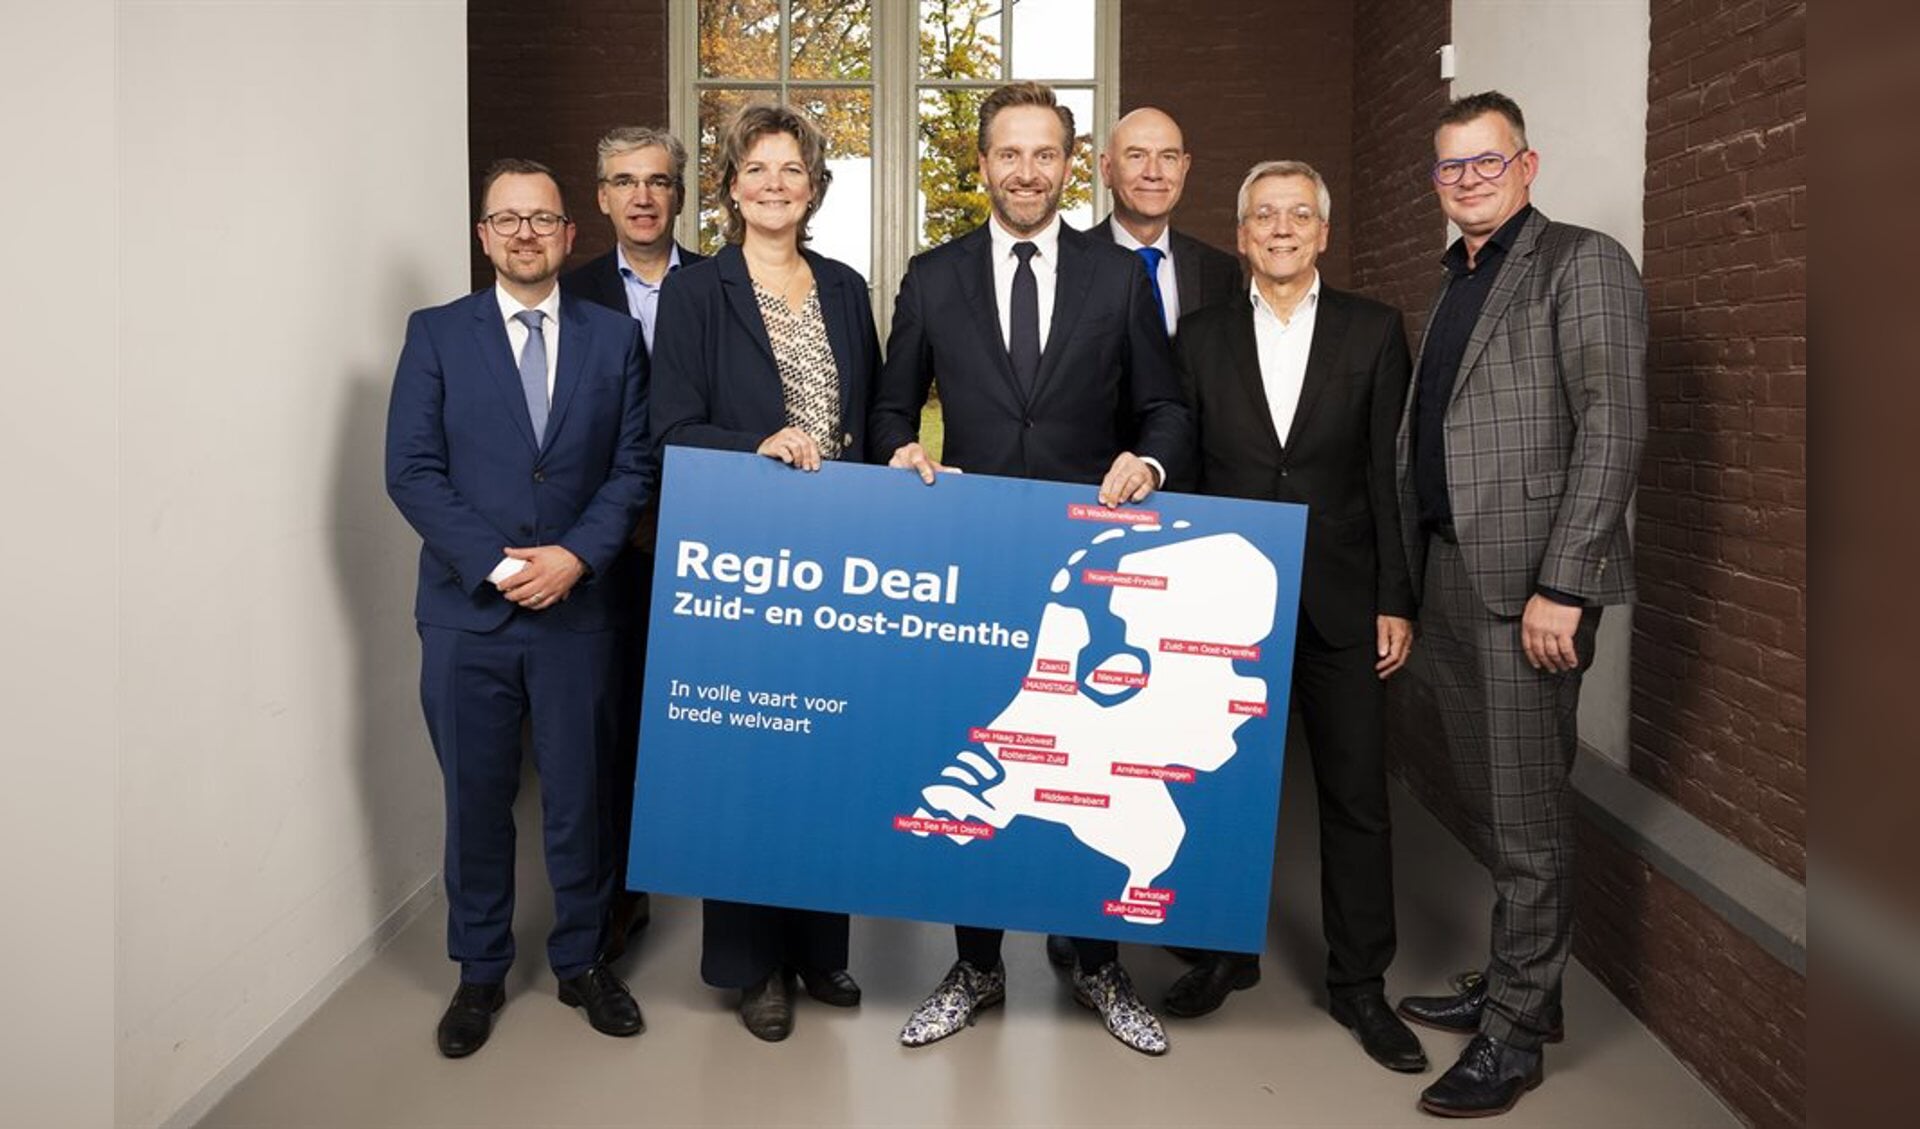 De ondertekening van de Regio Deal vond onlangs plaatas in Ede. Te zien zijn Jeroen Hartsuiker, Erik Bos, Willemien Meeuwissen, Hugo de Jonge, Erwin Hoogland, Peter Cool en Raymond Wanders (fotograaf: Freek van den Bergh).